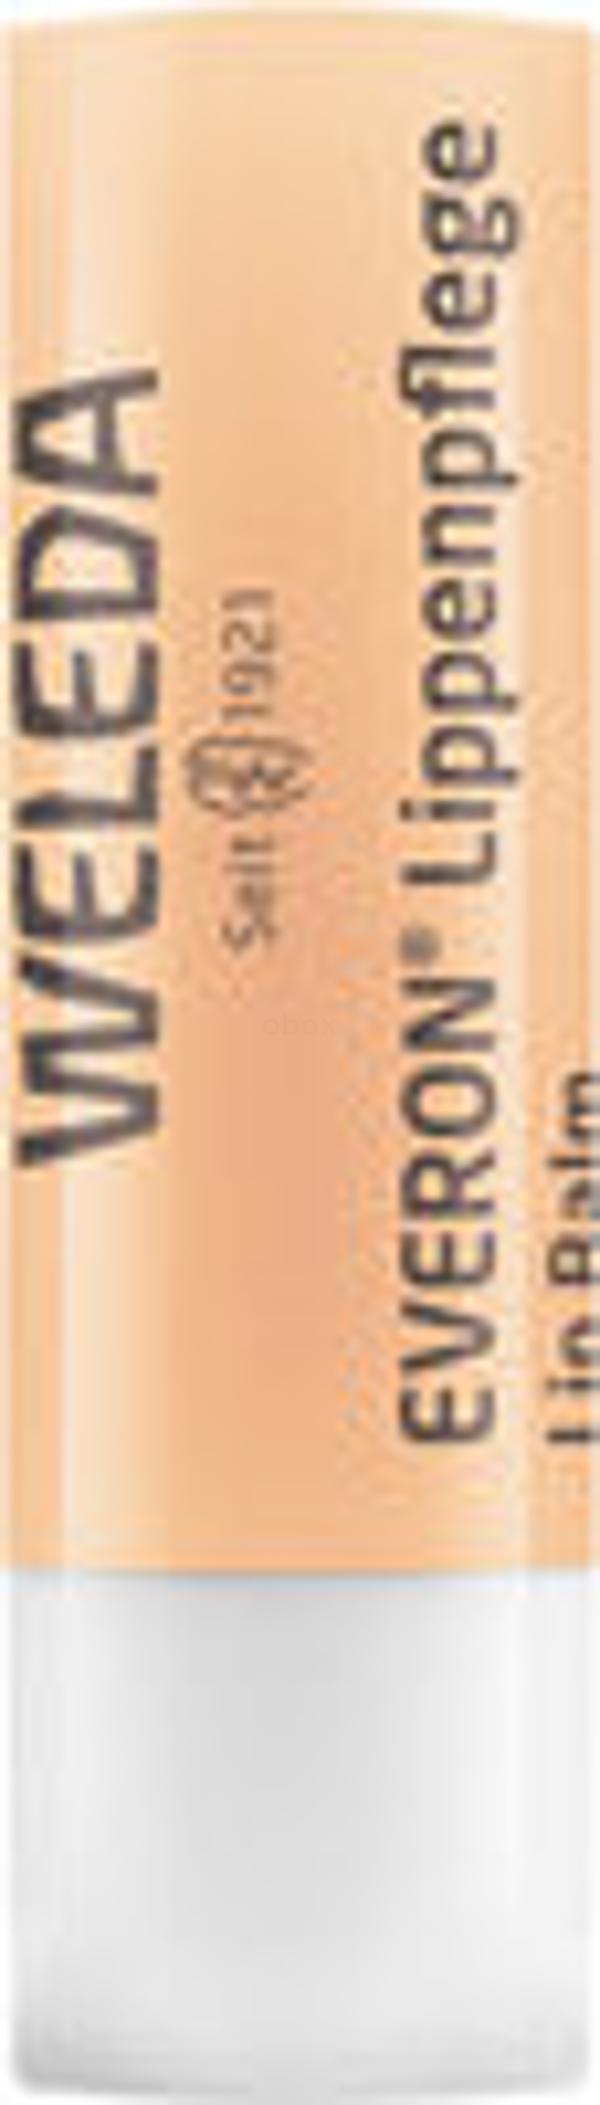 Produktfoto zu Everon Lippenpflege-Stift 4,8g